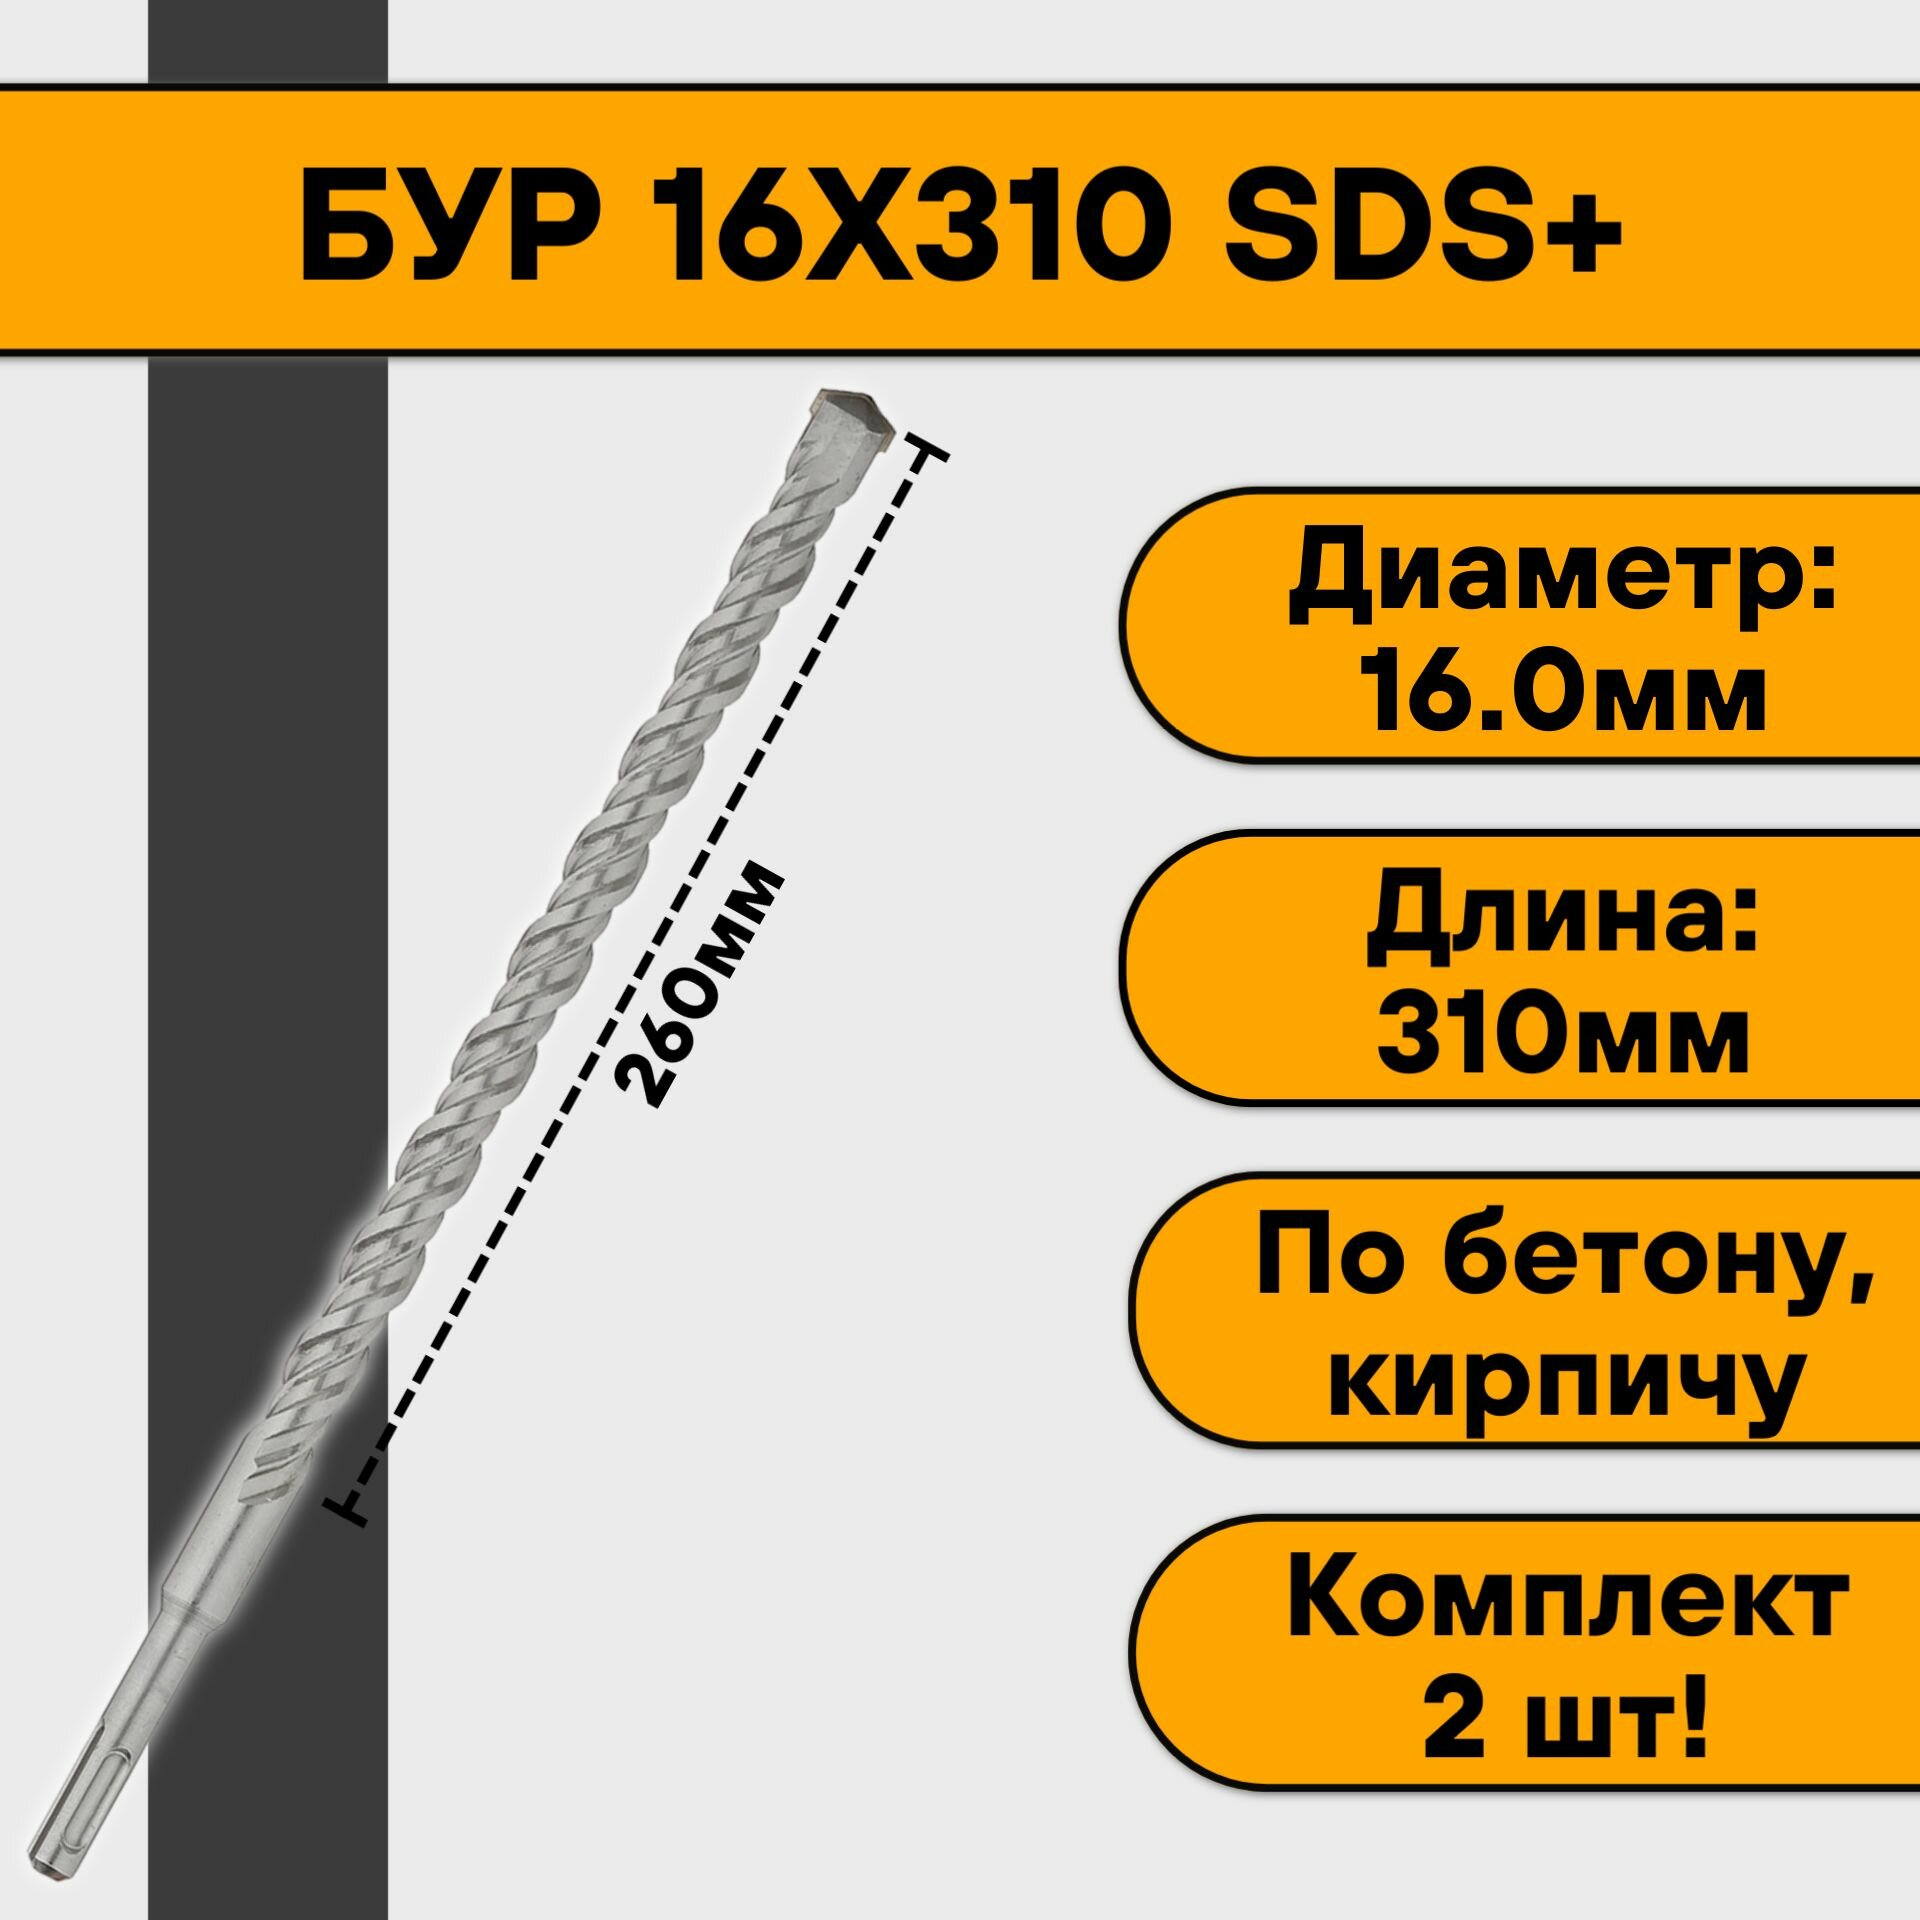 Бур 16х310 SDS+ (2 шт)